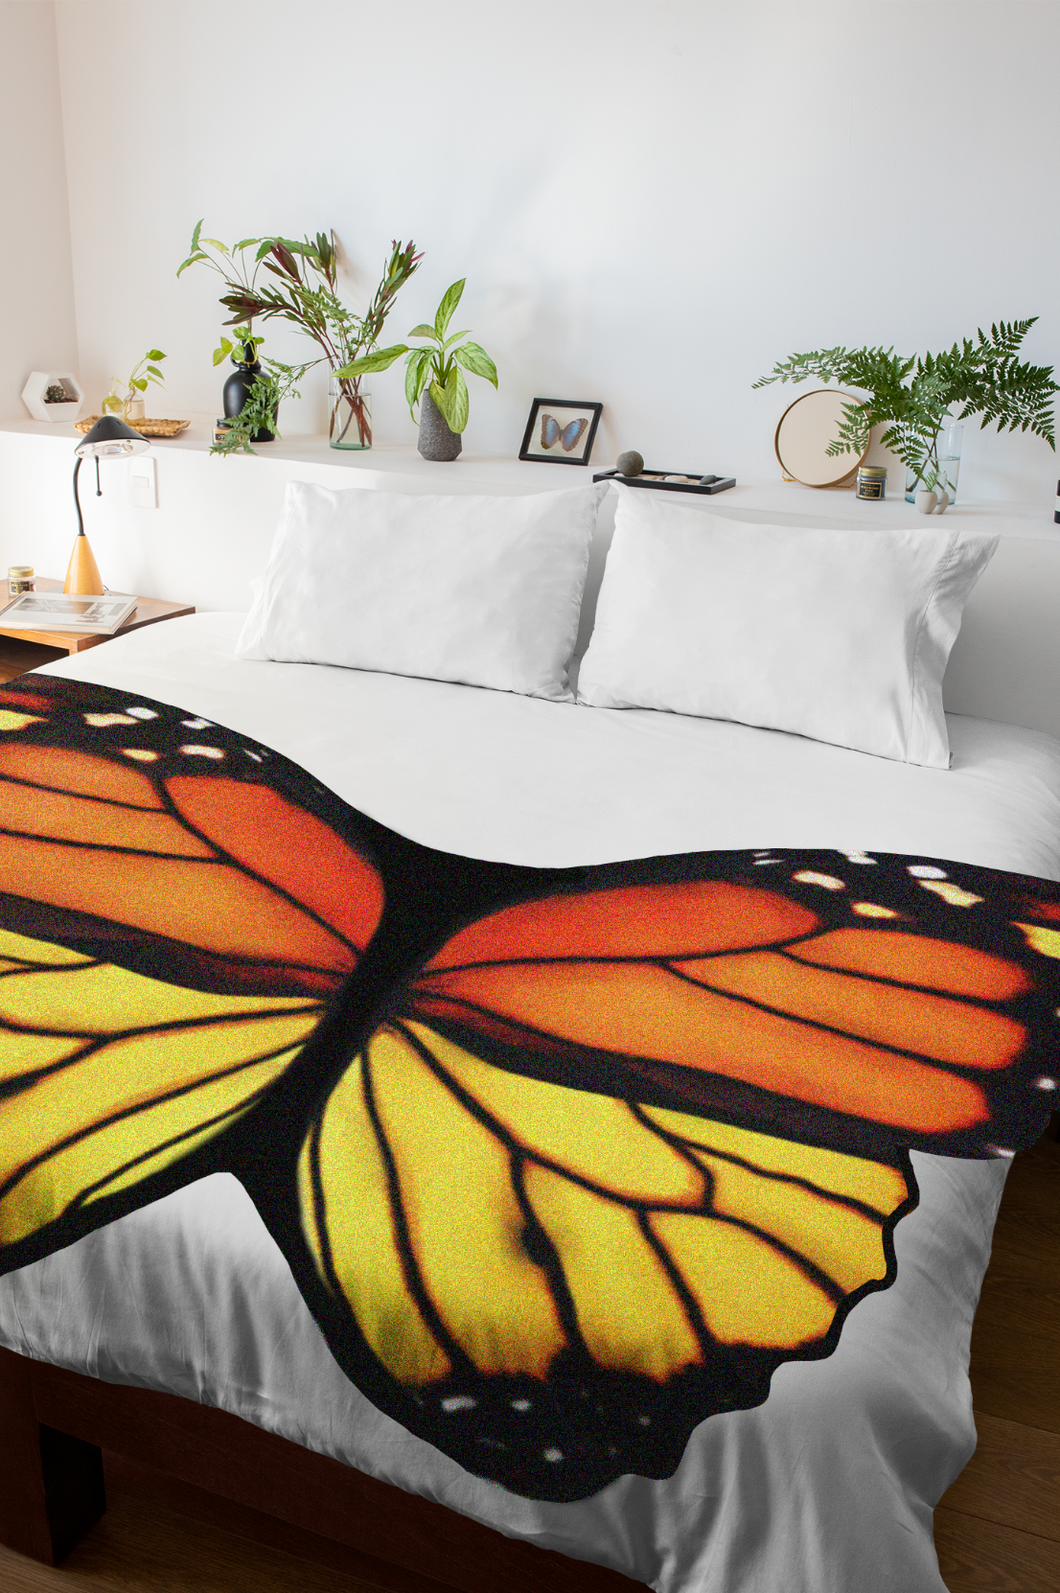 Monarch Butterfly Blankets